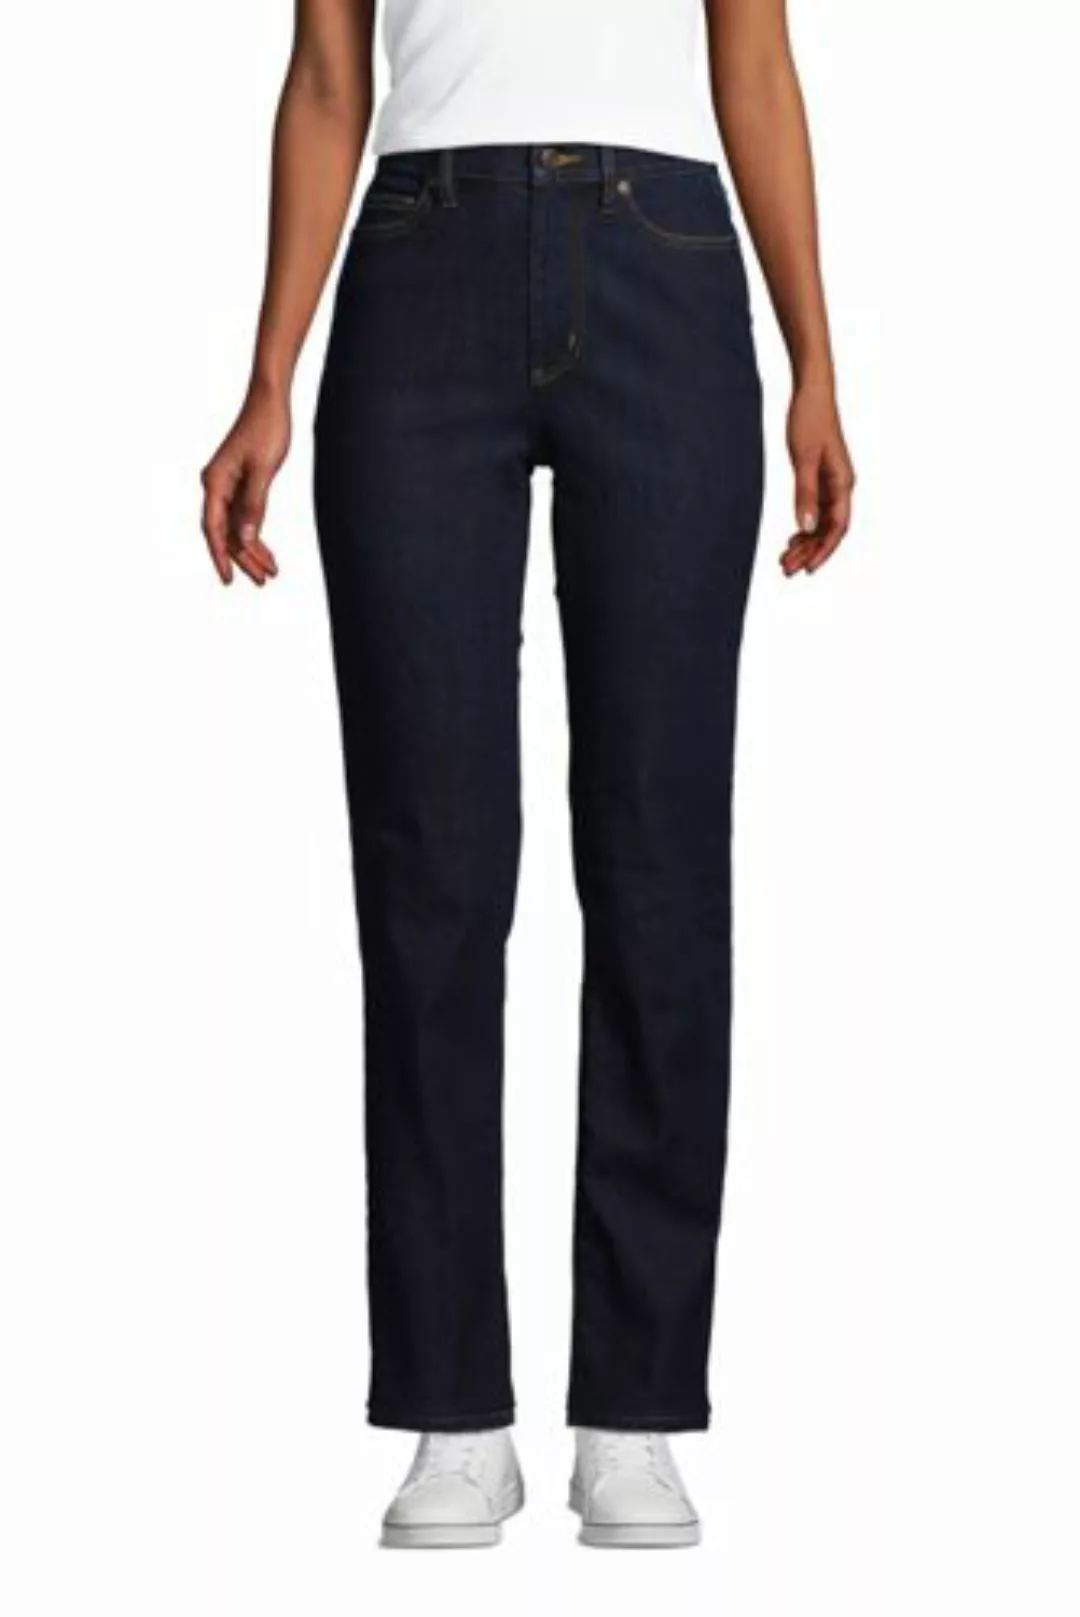 Straight Fit Öko Jeans High Waist, Damen, Größe: 34 32 Normal, Blau, Elasth günstig online kaufen